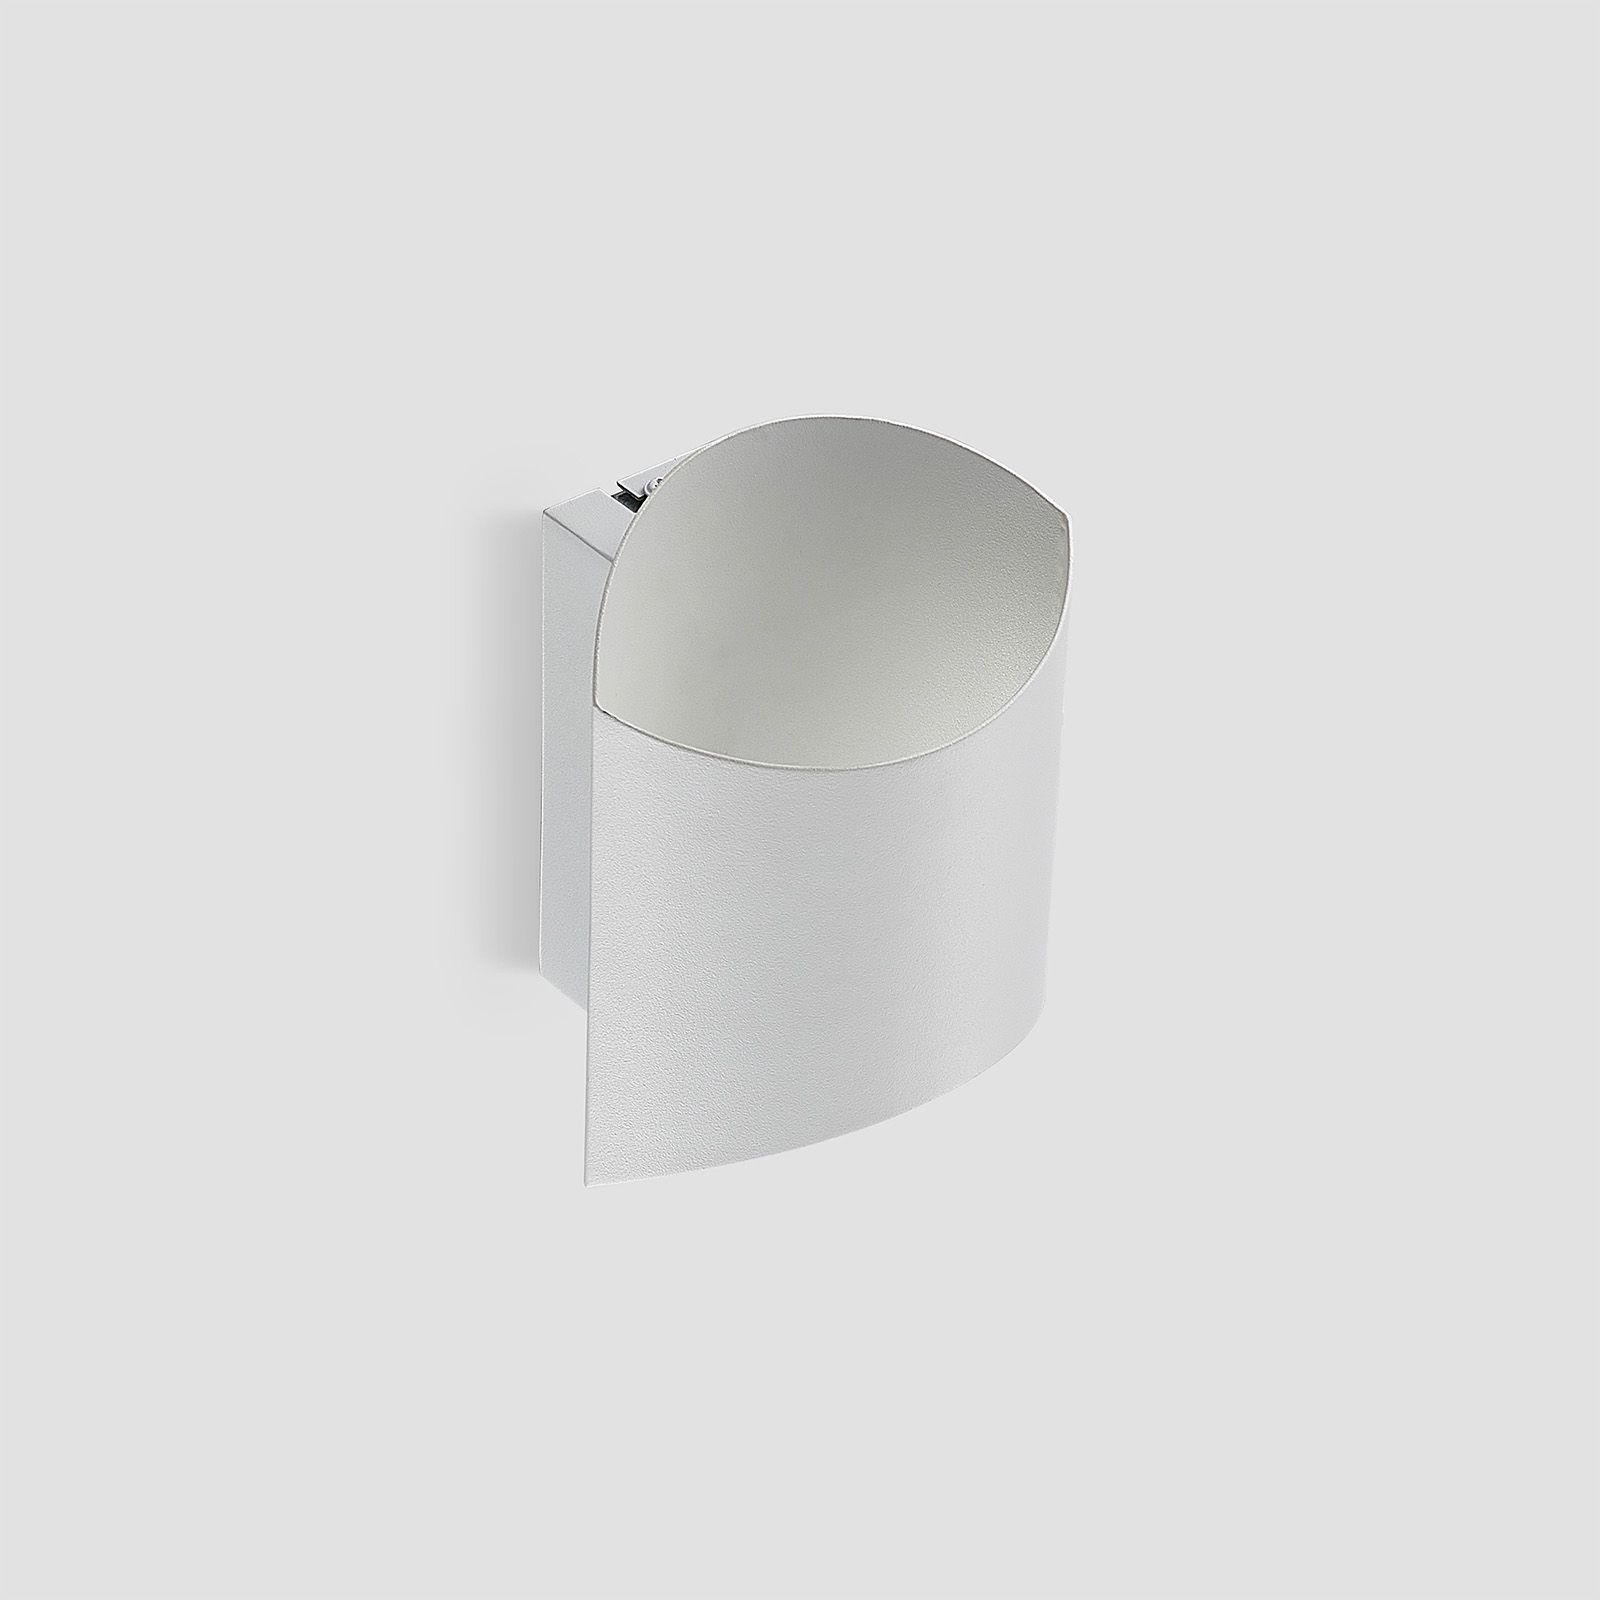 Arcchio Ayaz LED wall lamp, white